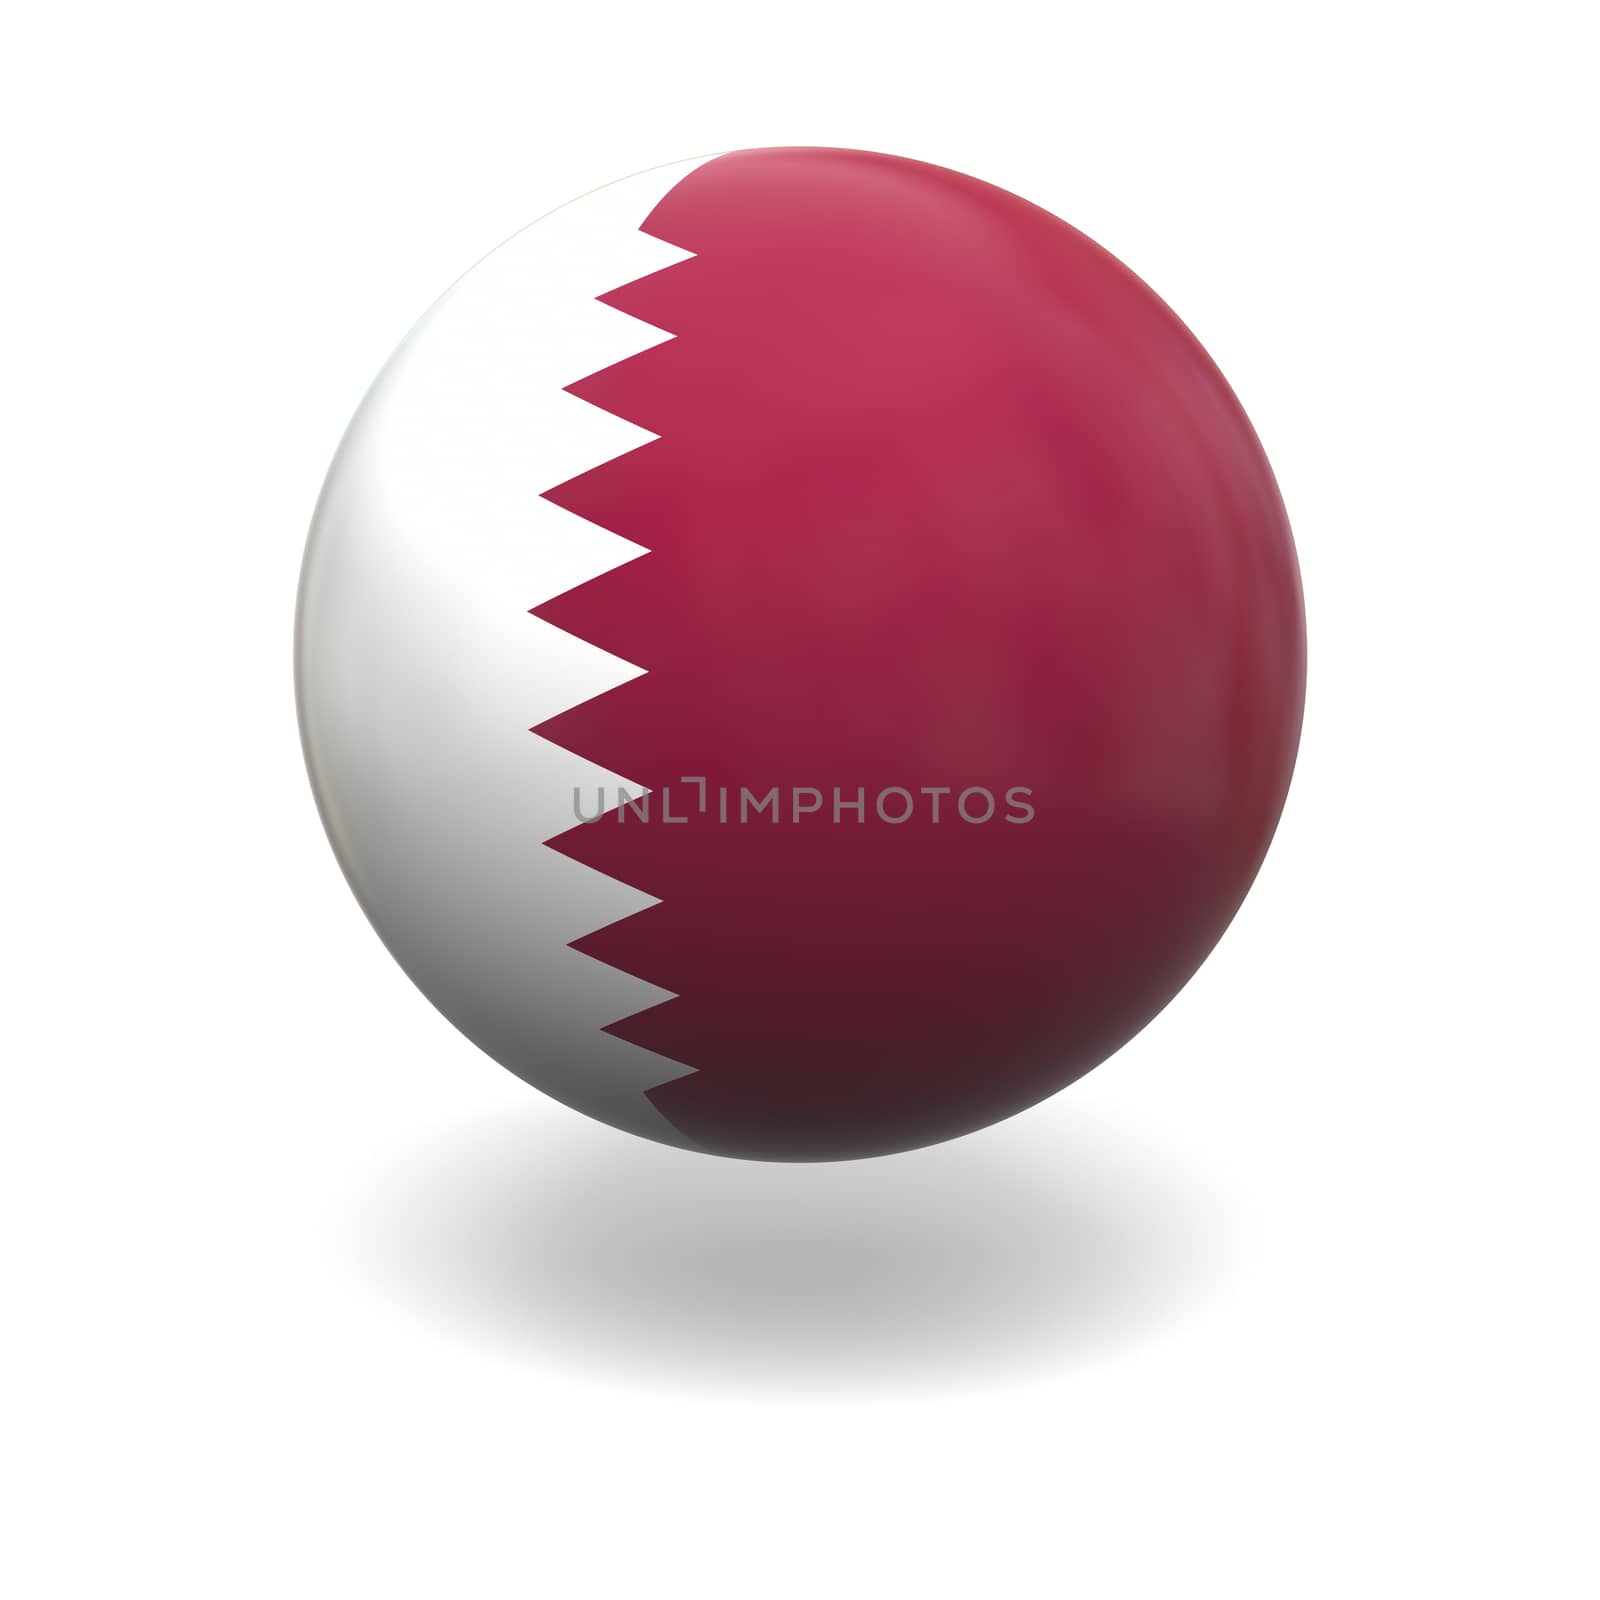 Qatar flag by Harvepino